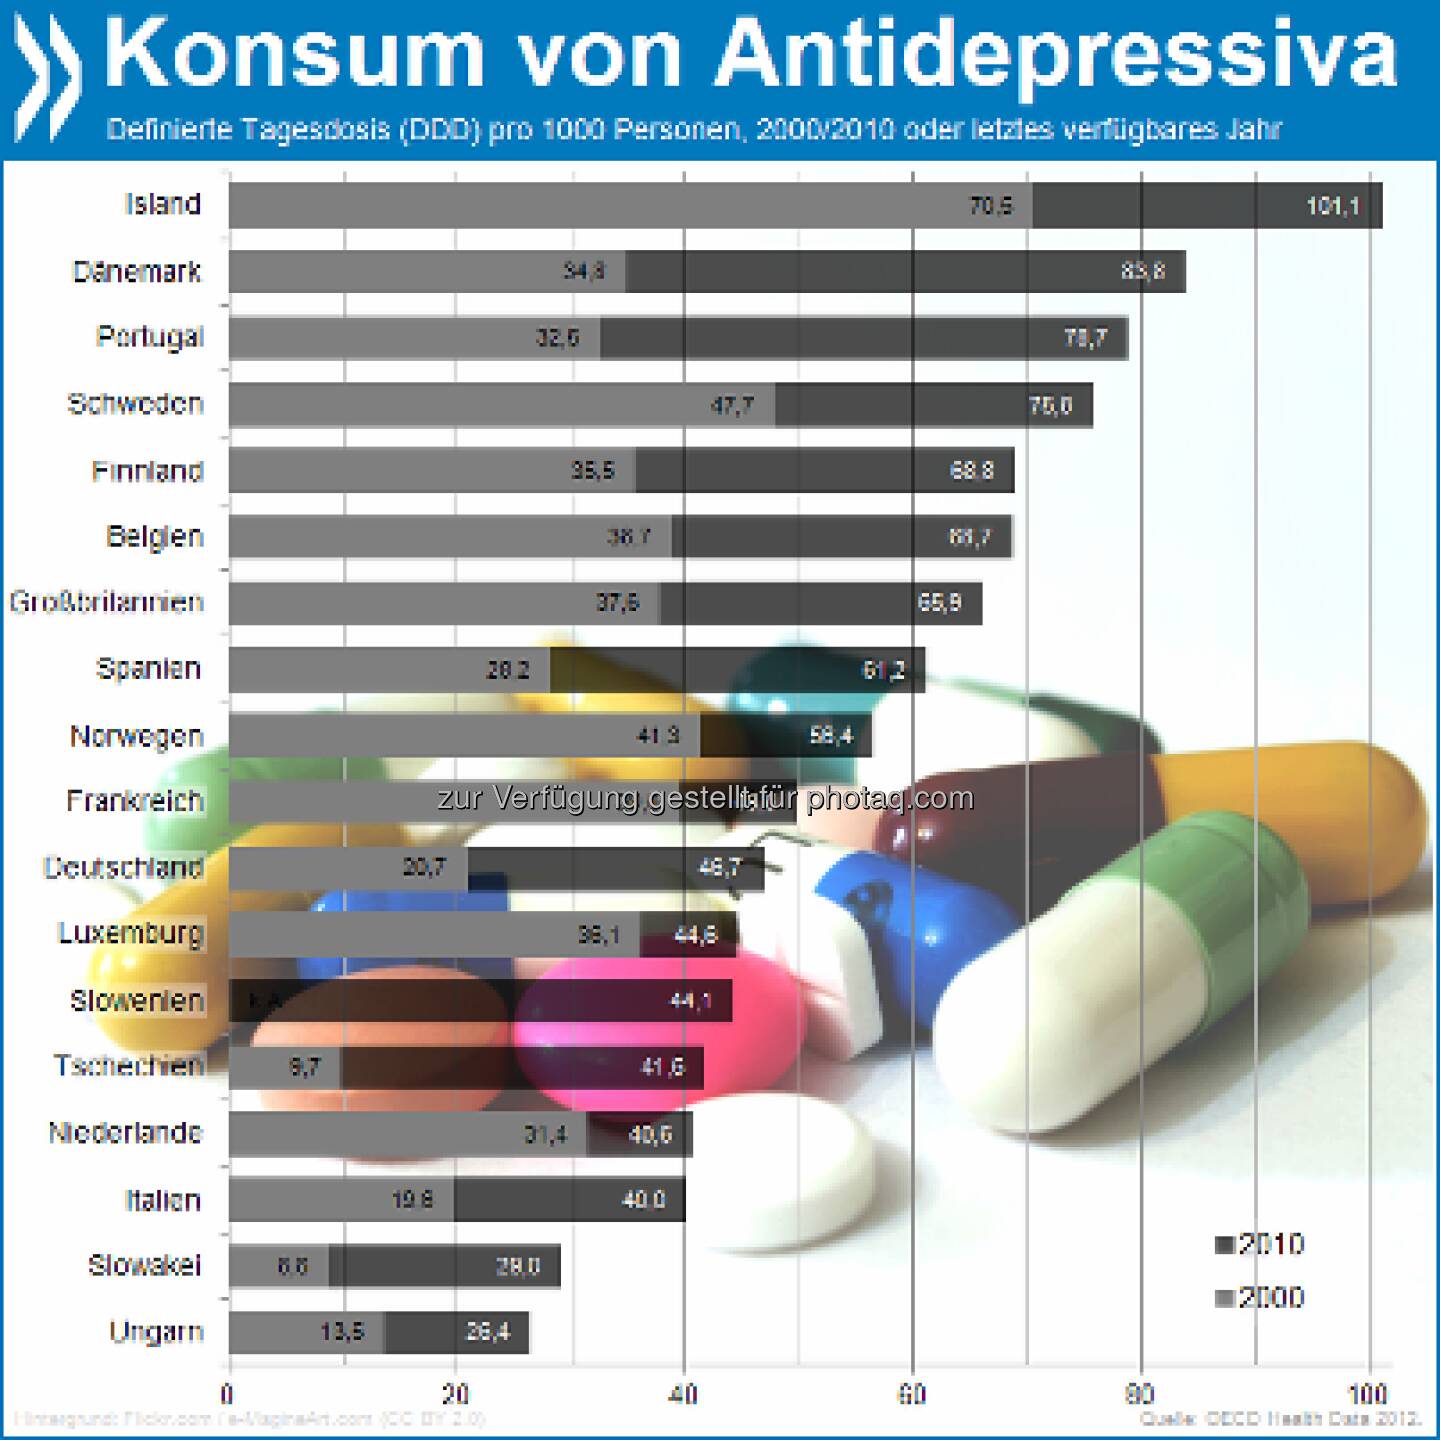 Einfach deprimierend! Der Konsum von Antidepressiva in Europa hat sich in zehn Jahren fast verdoppelt. Die Deutschen verbrauchten mit 47 Tagesdosen pro 1000 Personen im Jahr 2010 zwar weniger als der europäische Schnitt, aber gut doppelt so viel wie 2000. Mehr unter http://bit.ly/ZWs2cI (Health at a Glance: Europe 2012, S. 89)